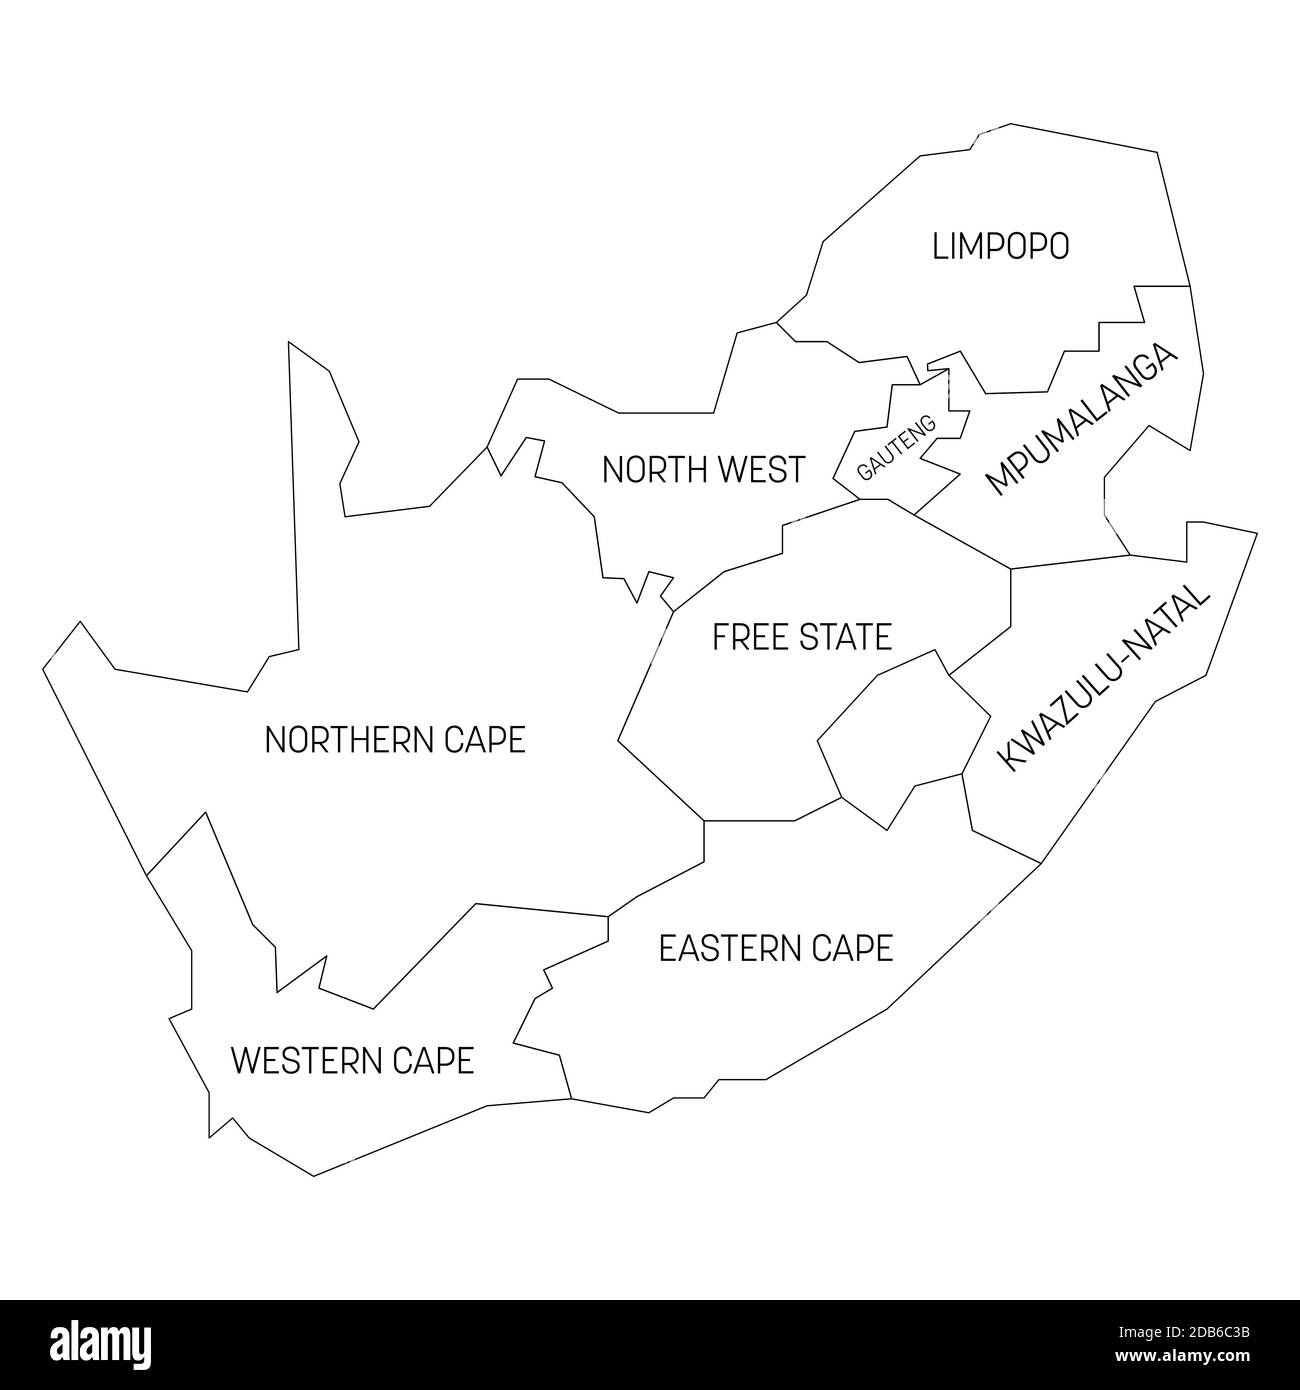 Mappa politica del Sud Africa, RSA. Divisioni amministrative - Province. Mappa vettoriale semplice con etichette. Illustrazione Vettoriale